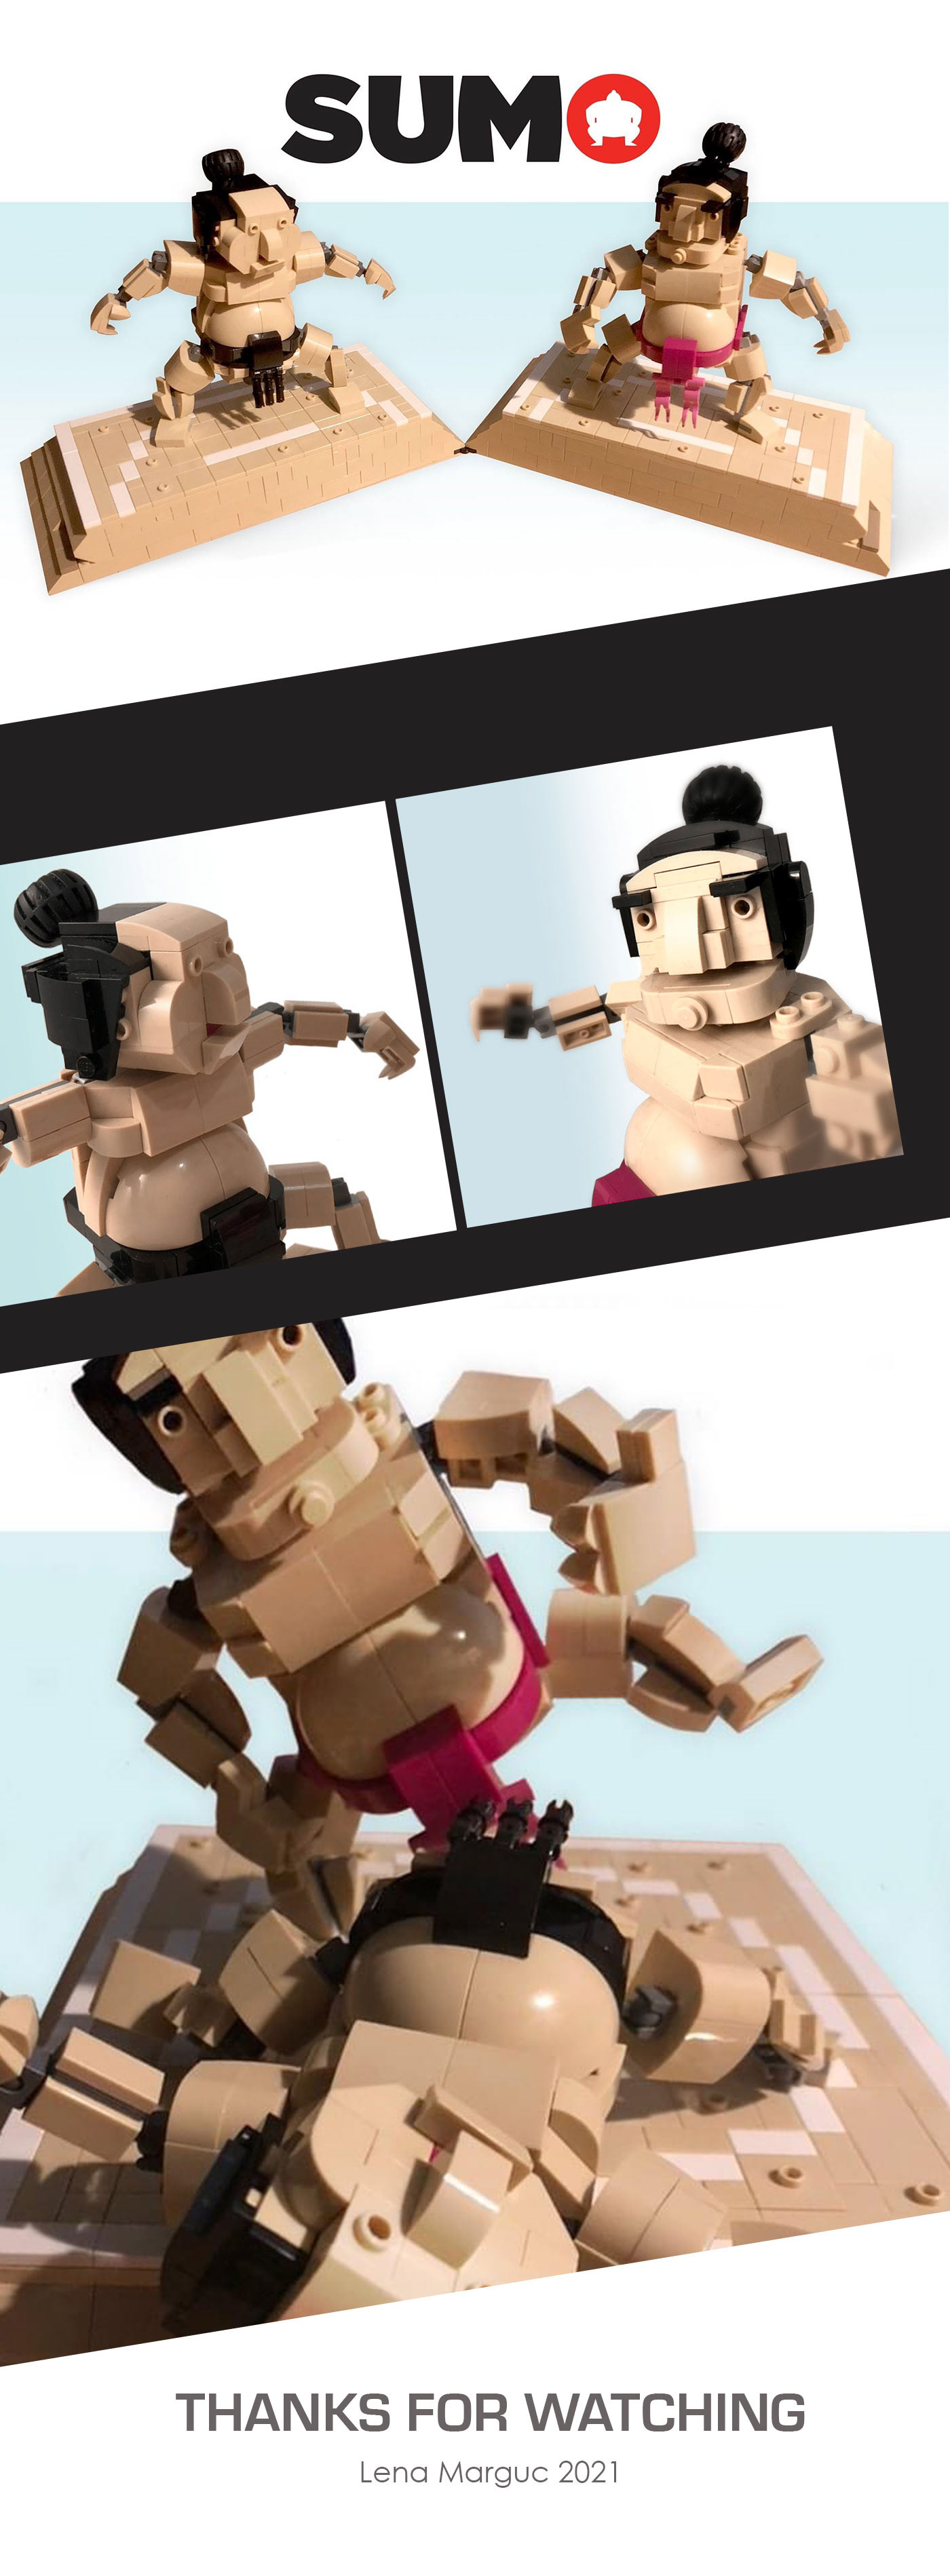 japan Japanese Sports LEGO lego ideas Lego MOC Lego model sumo Sumo Japan Sumo wrestler sumo wrestling